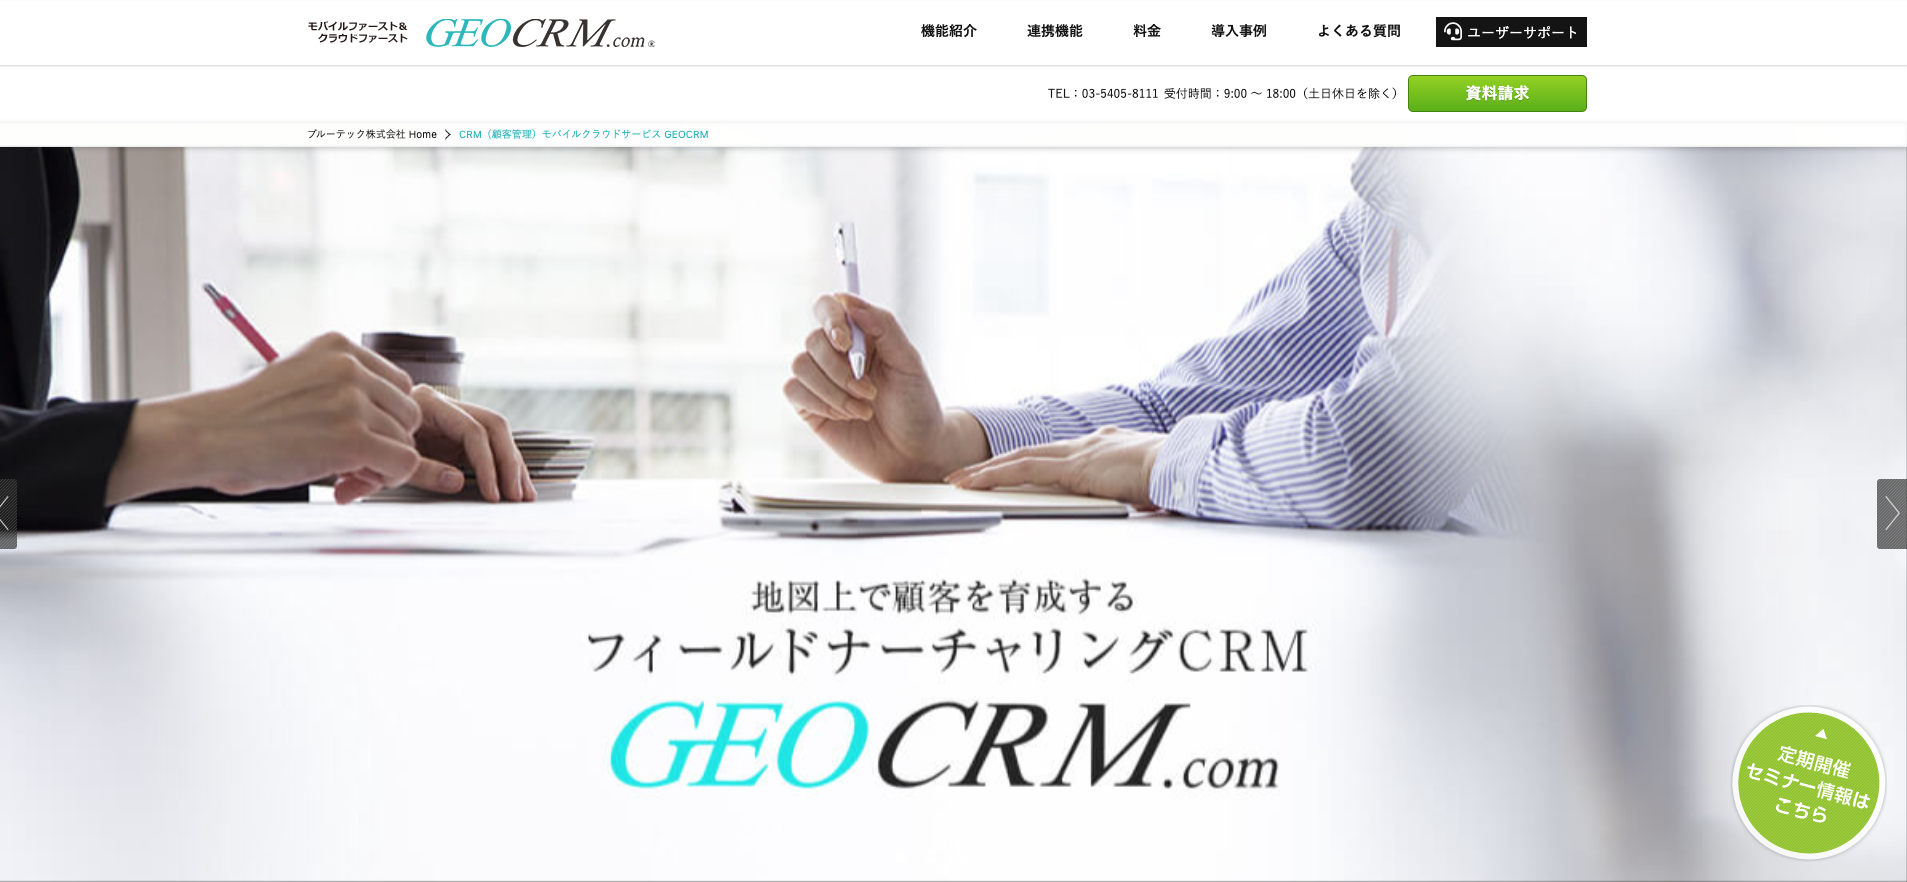 Geo CRM